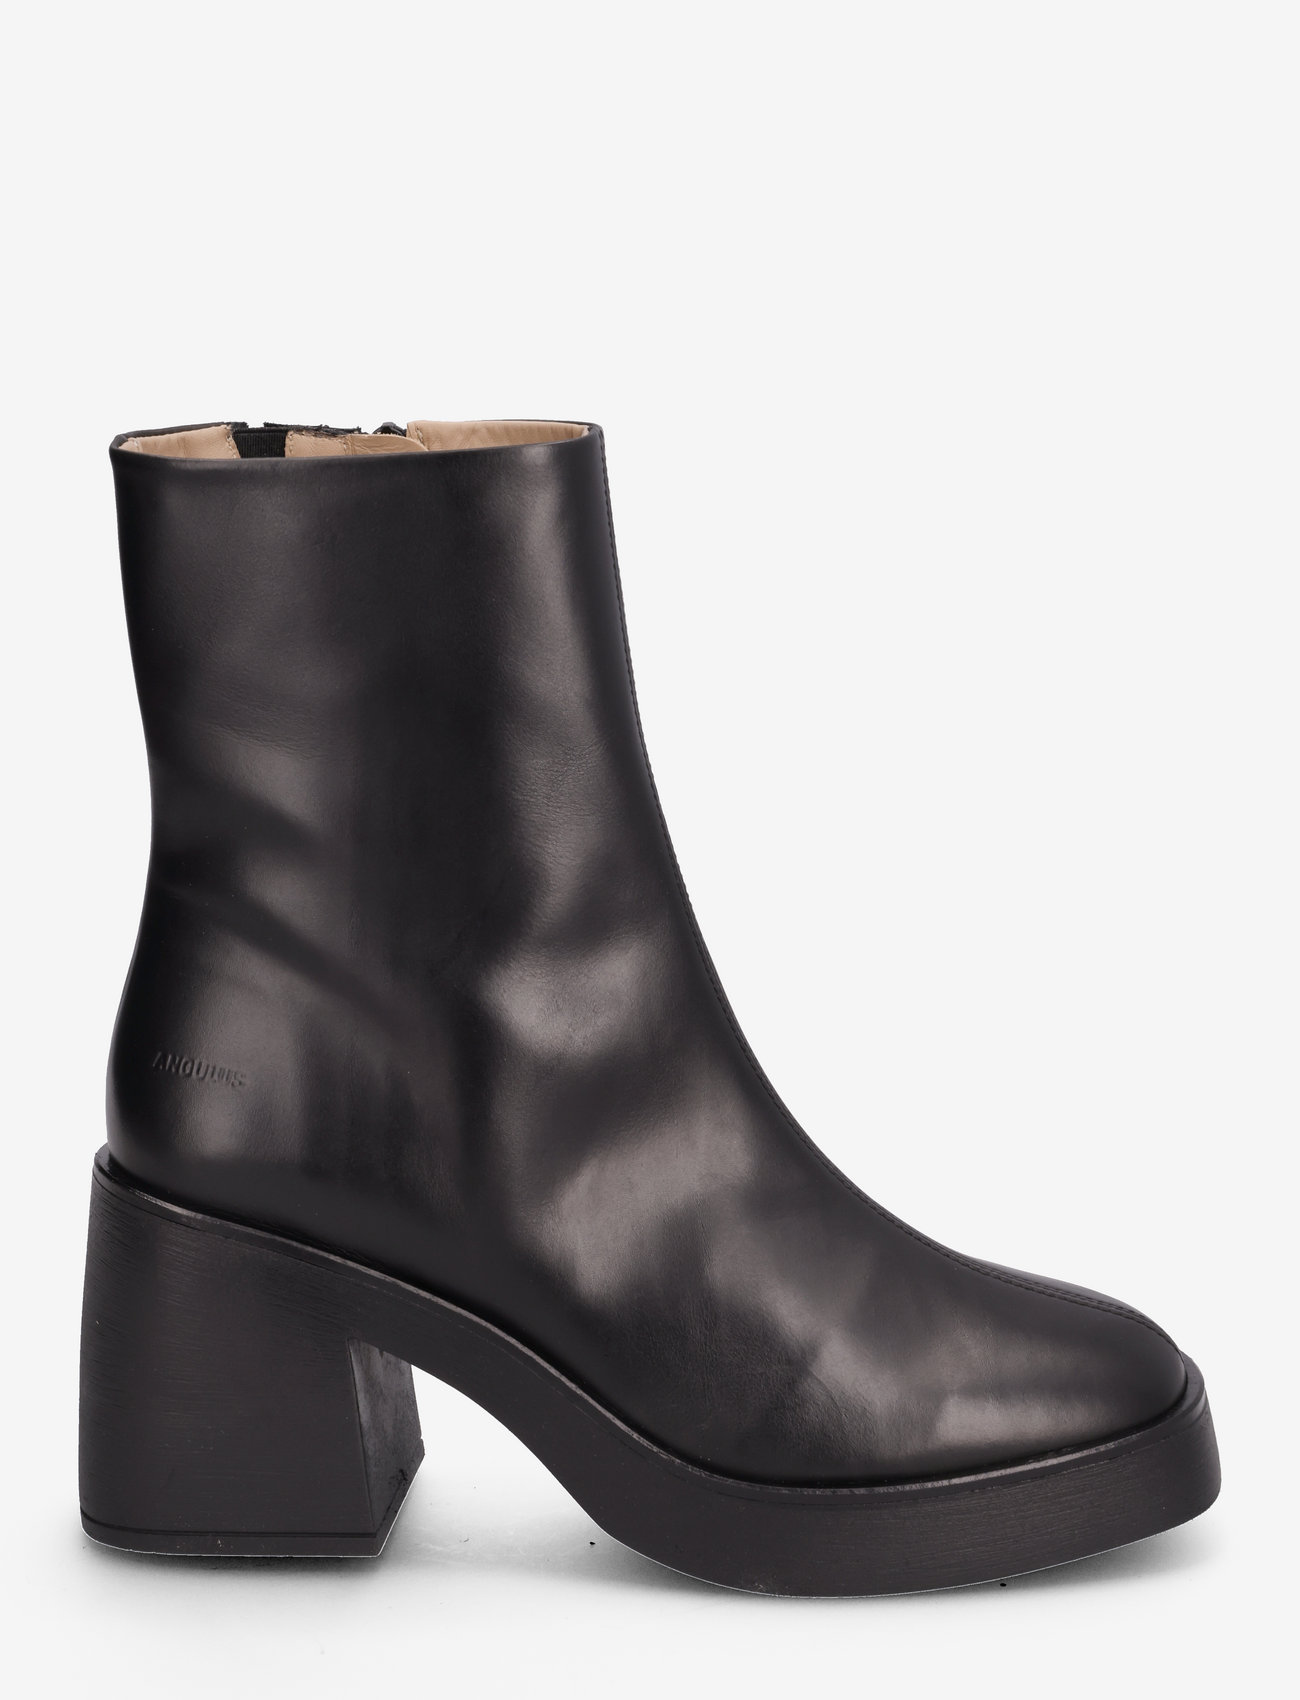 ANGULUS - Bootie - block heel - with zippe - high heel - 1604/001 black/black - 1